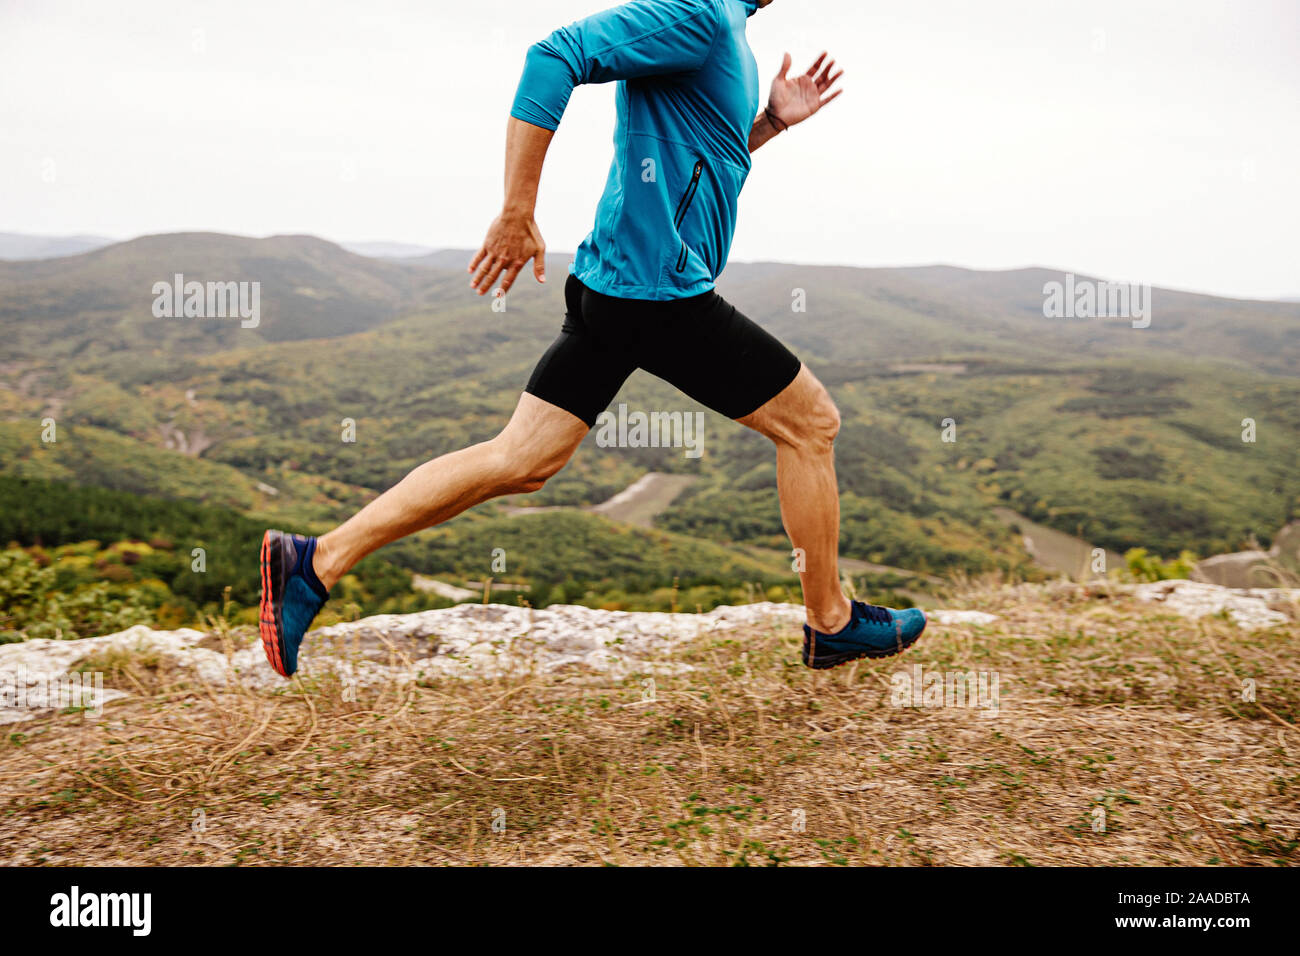 Mann Läufer laufen Mountain Trail am Rand der Klippe Stockfoto